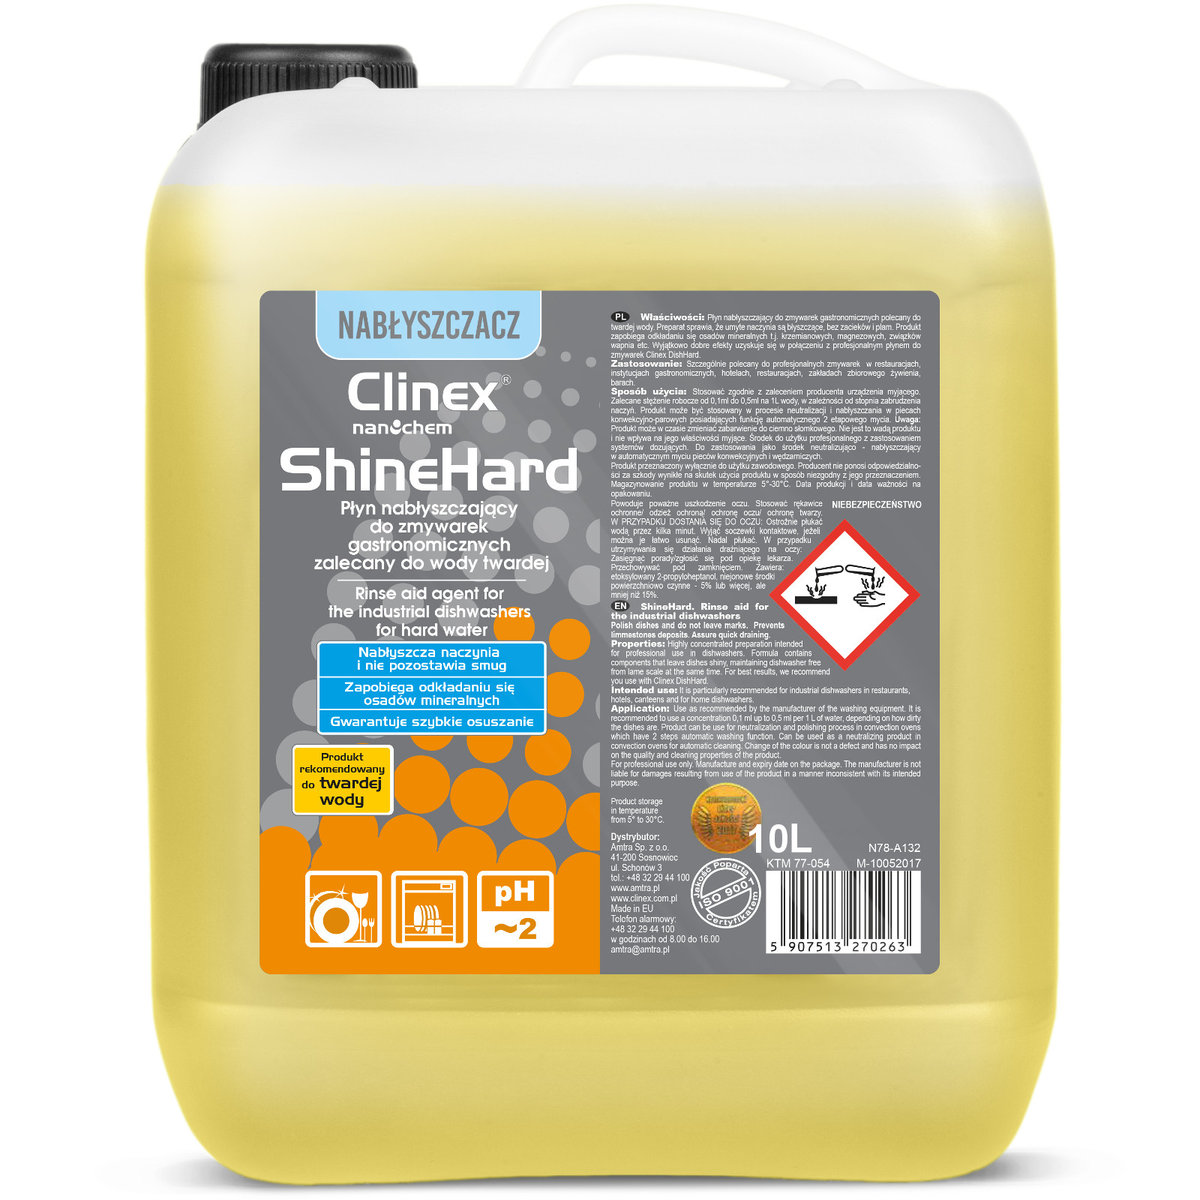 Clinex ShineHard 10l nabłyszczający do zmywarek